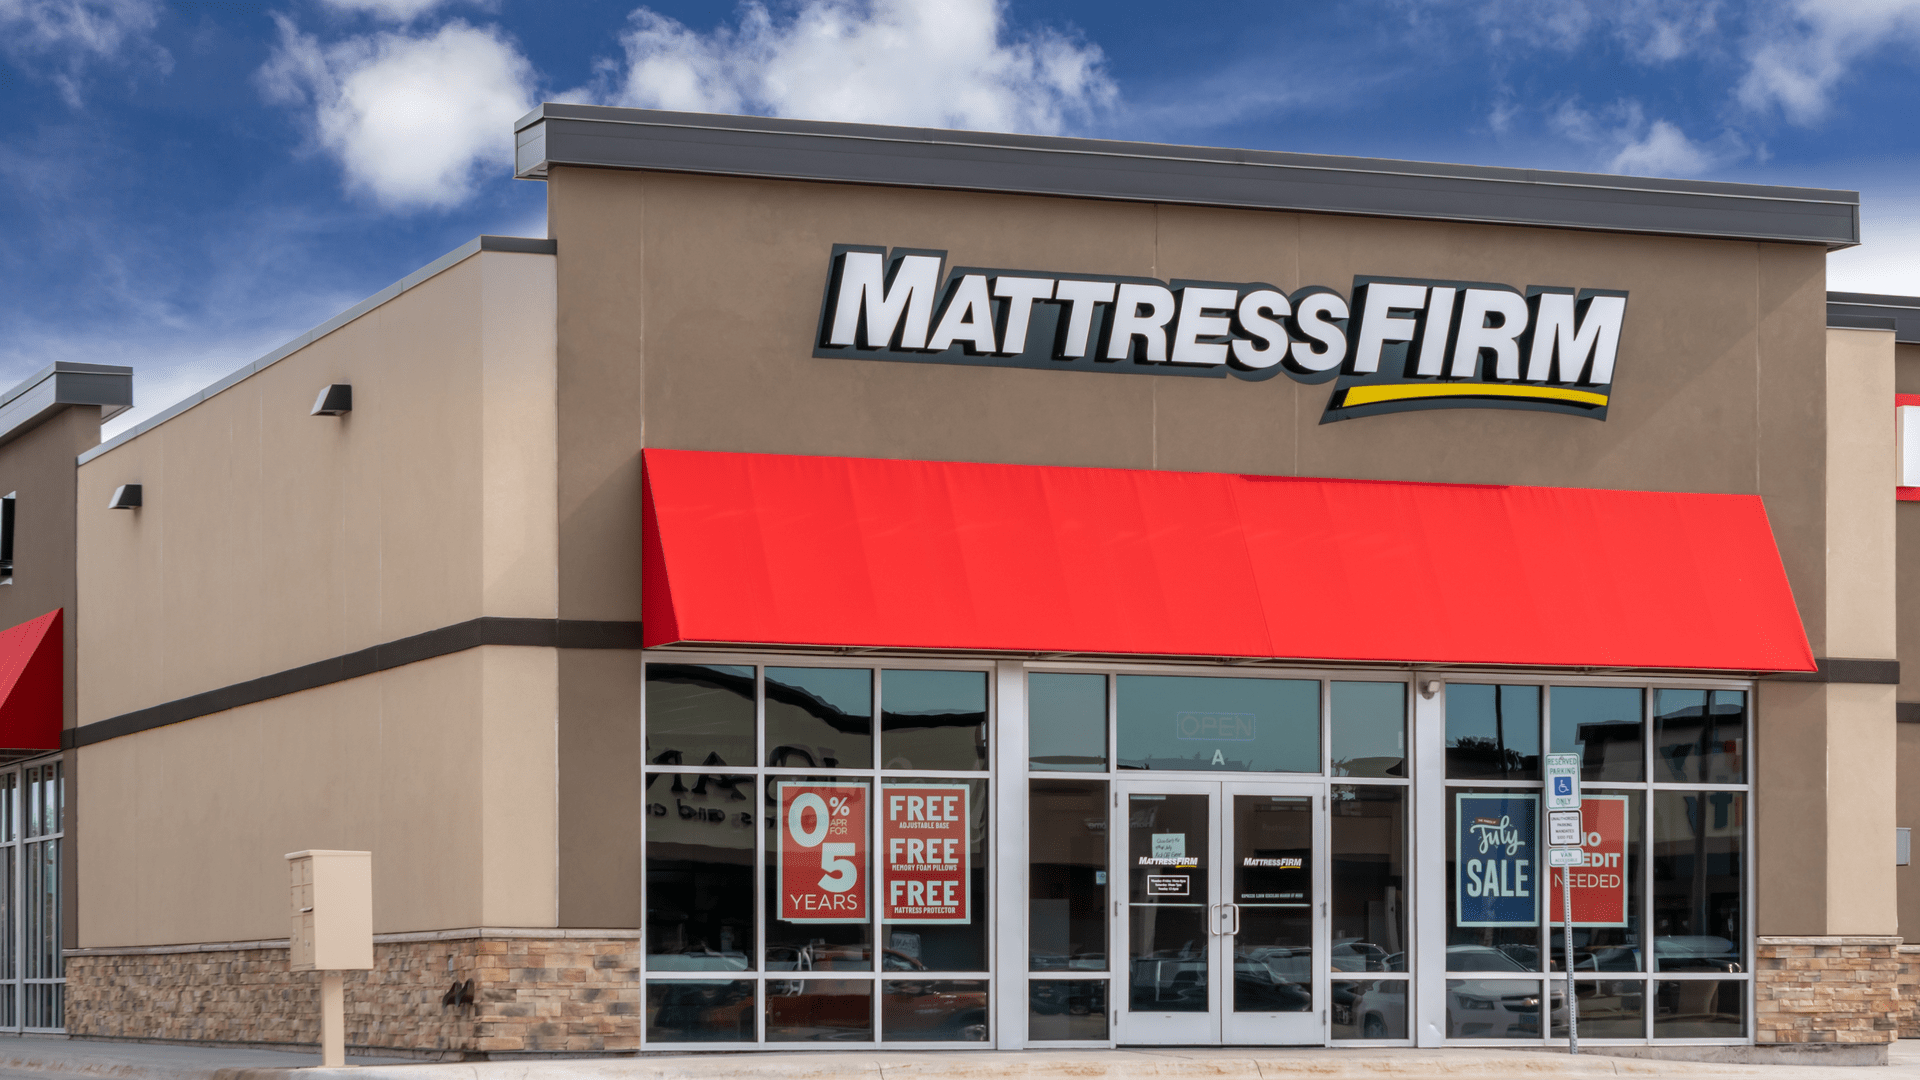 mattress firms arent only holding mattresses